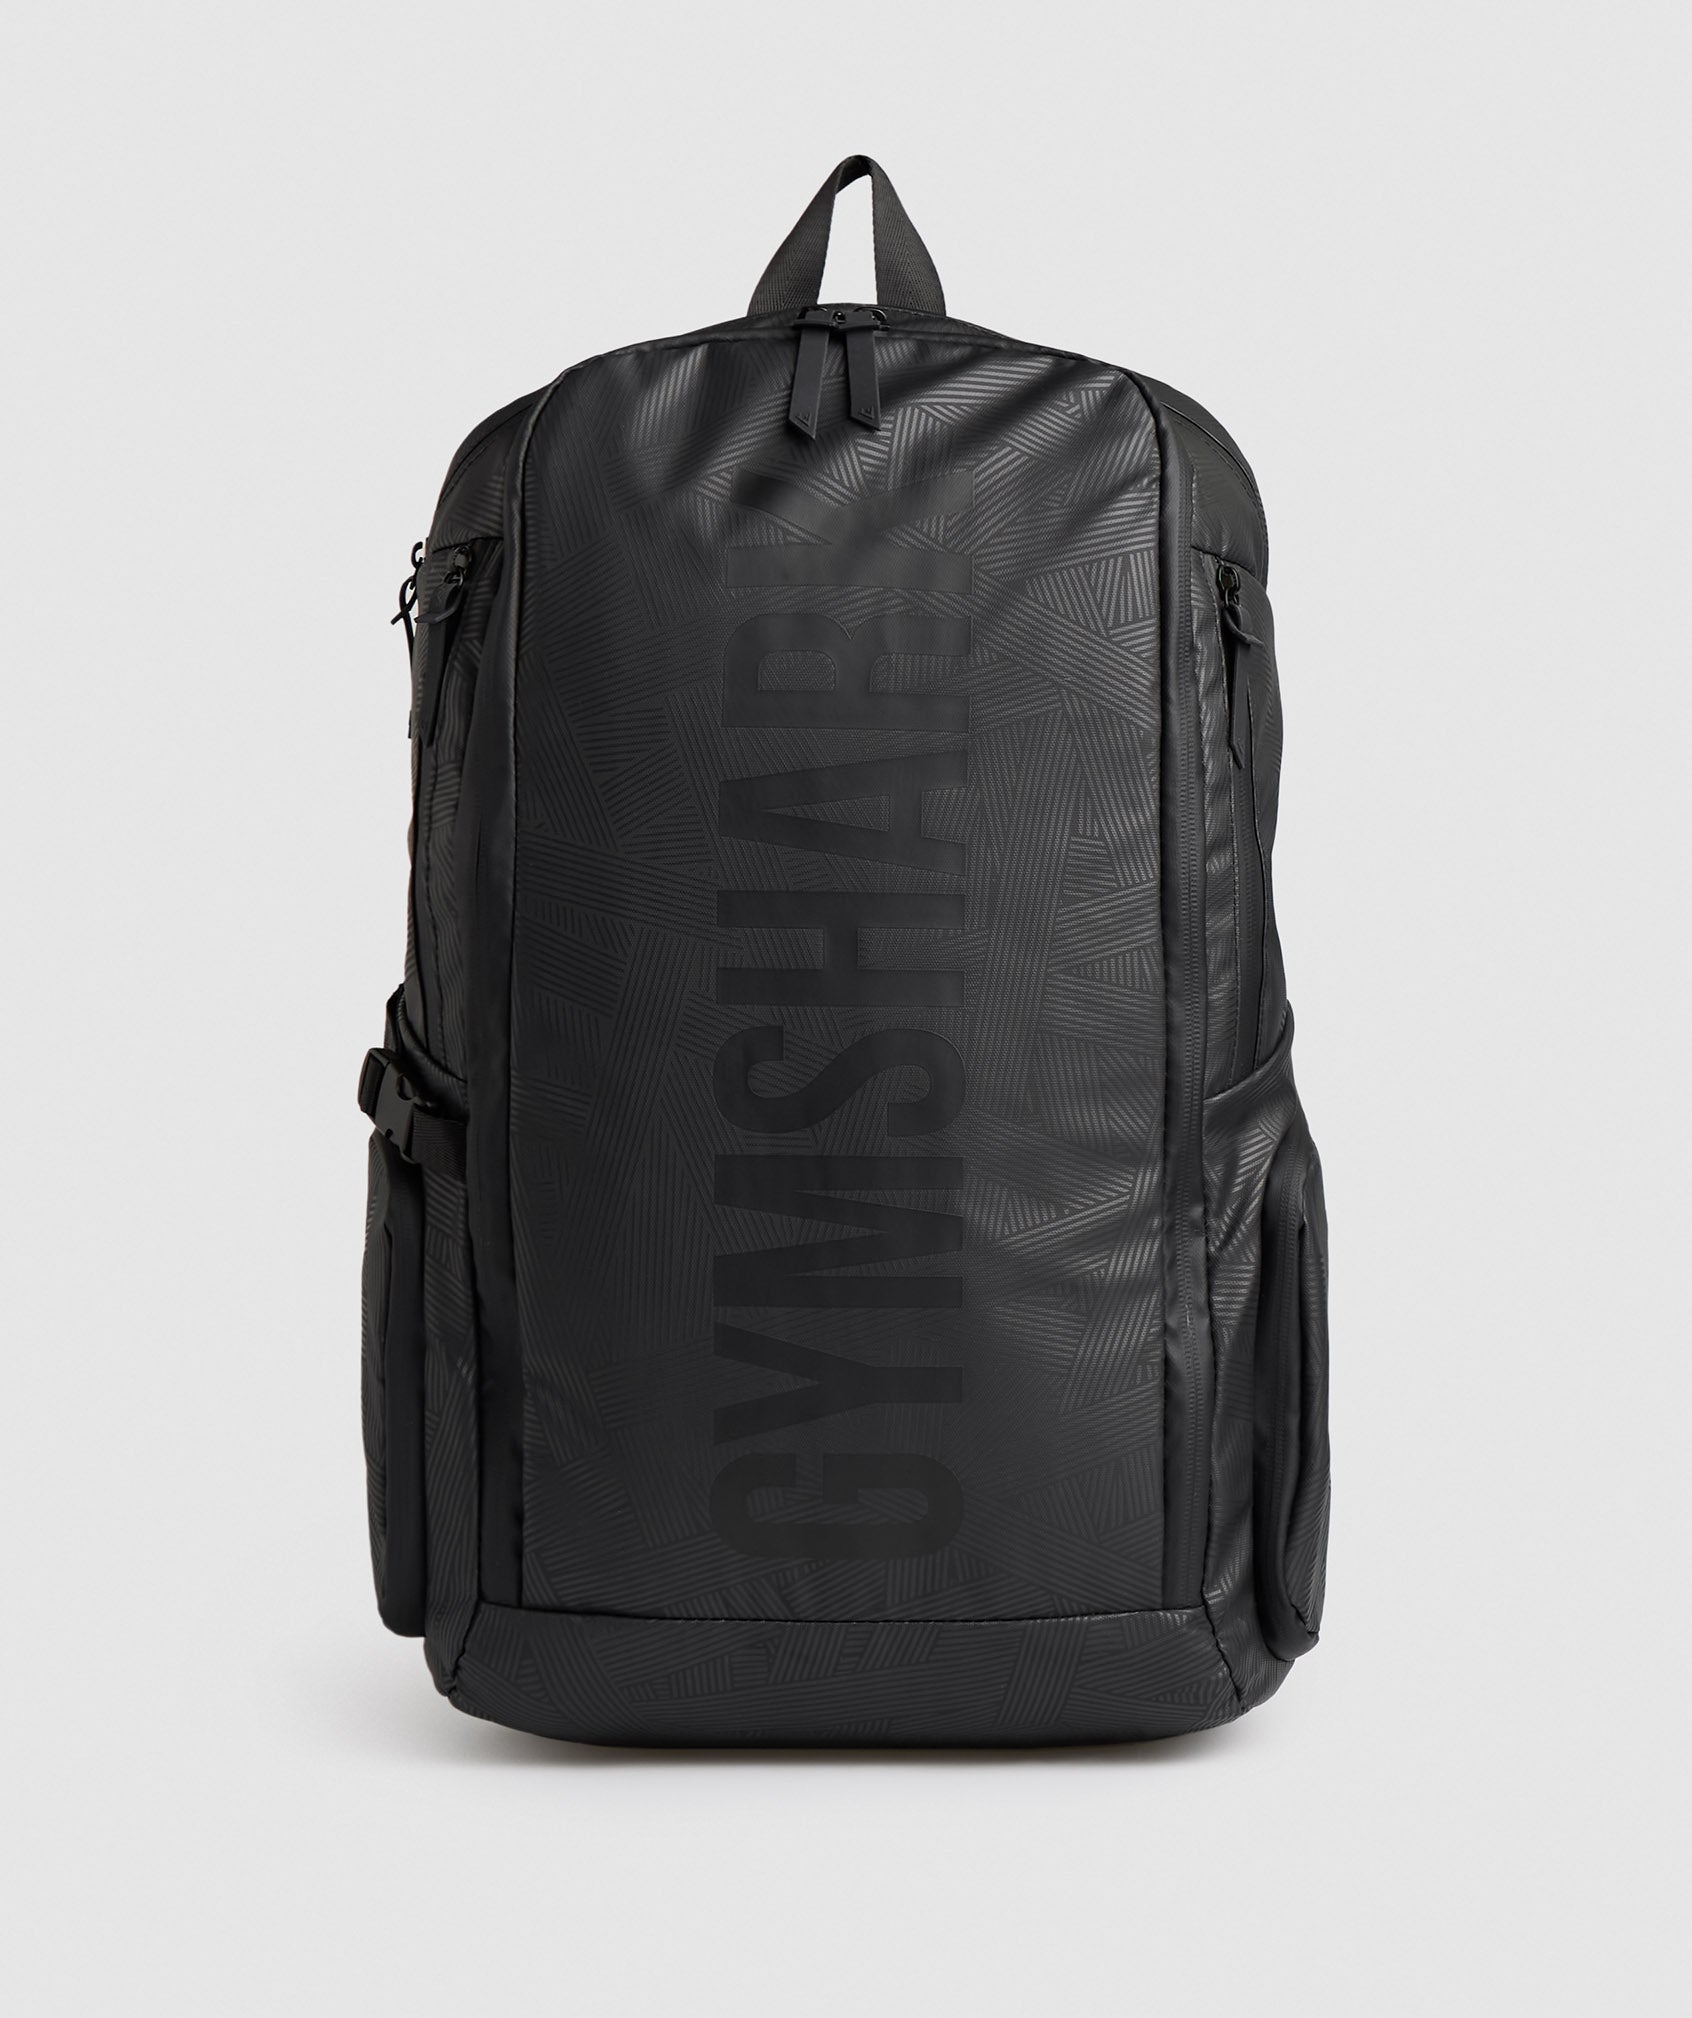 X-Series 0.3 Backpack in Black Print - view 1